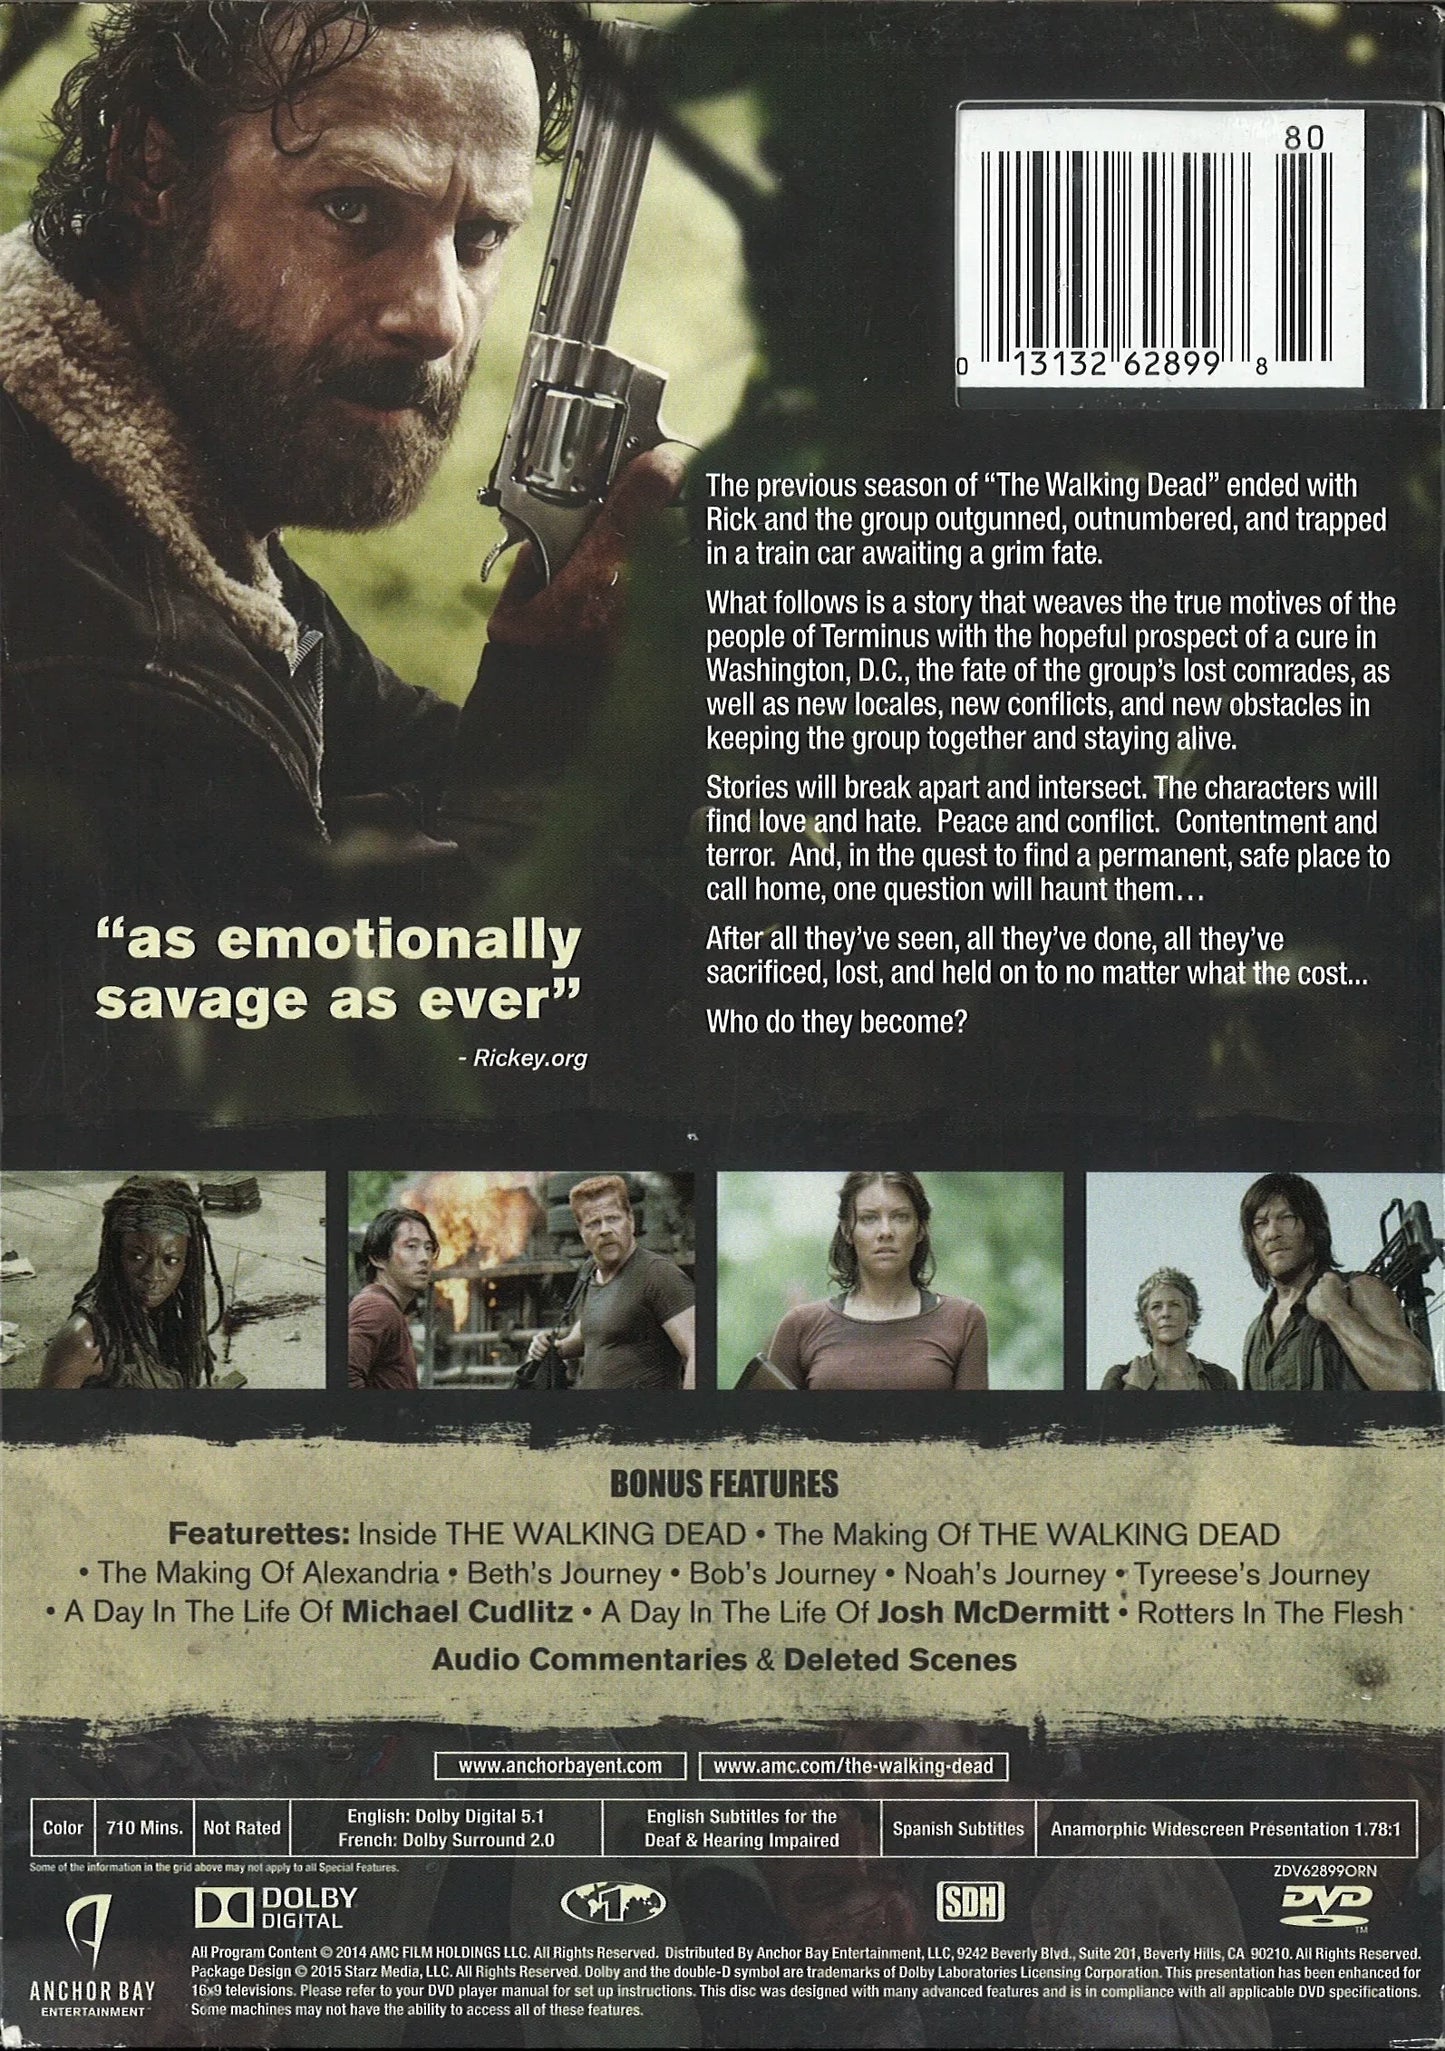 The Walking Dead: Complete 5th Season DVD